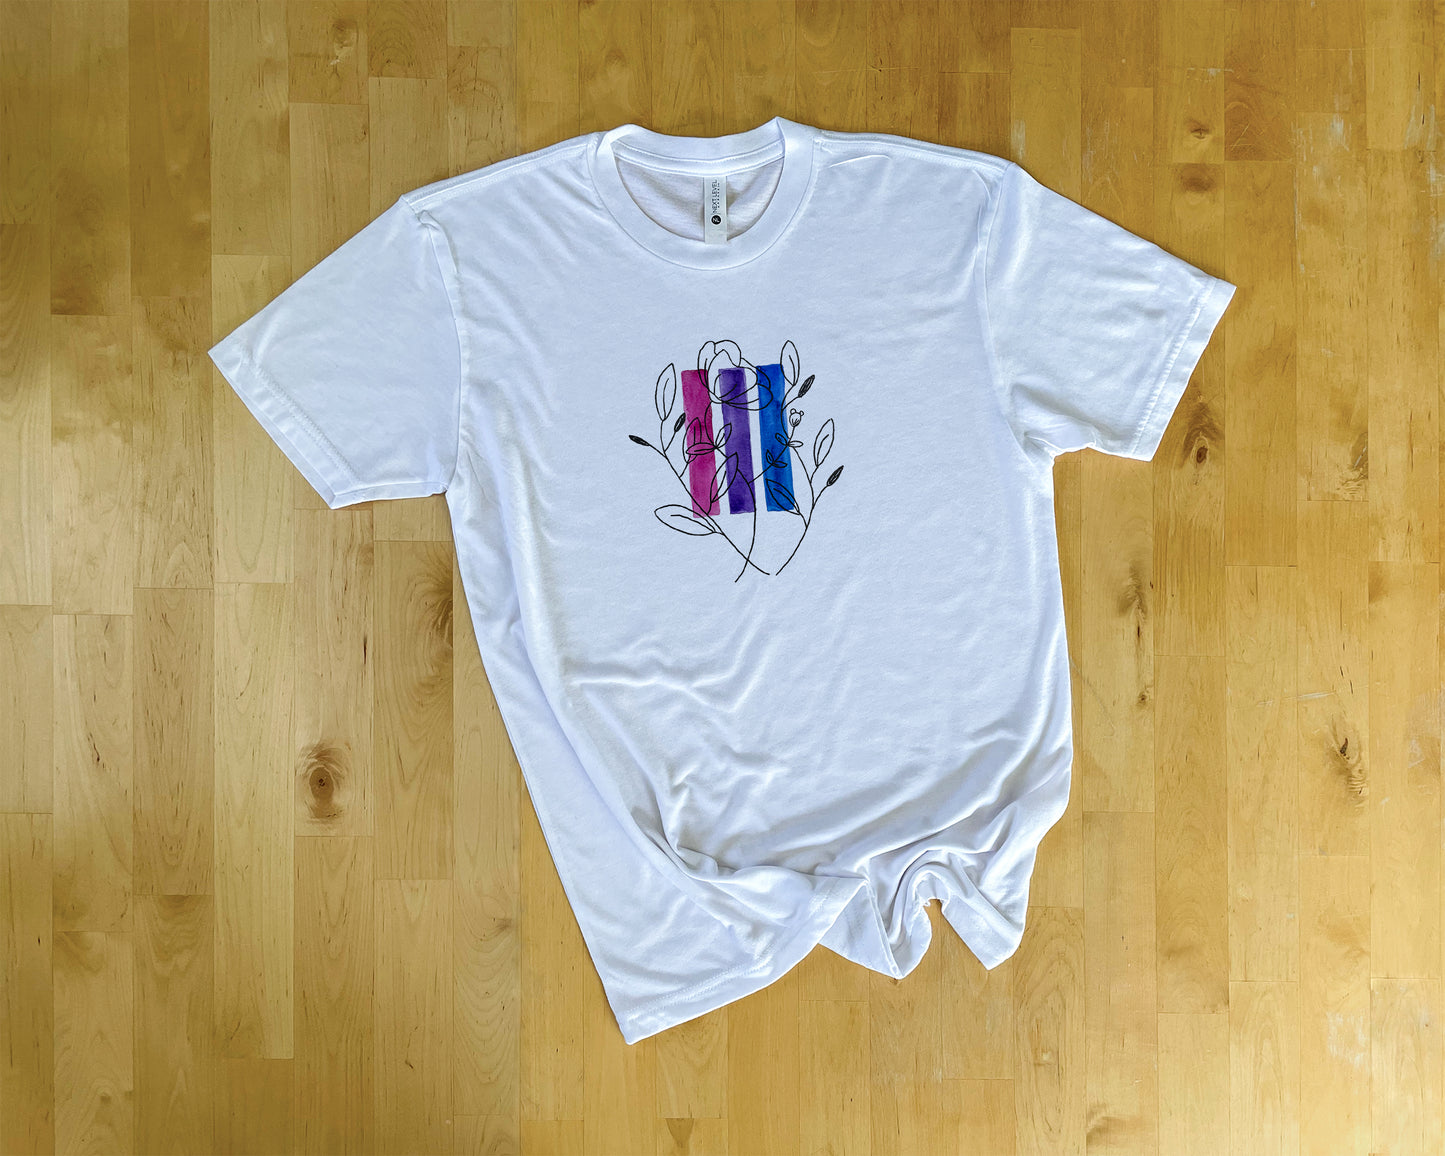 Bisexual Pride Shirt